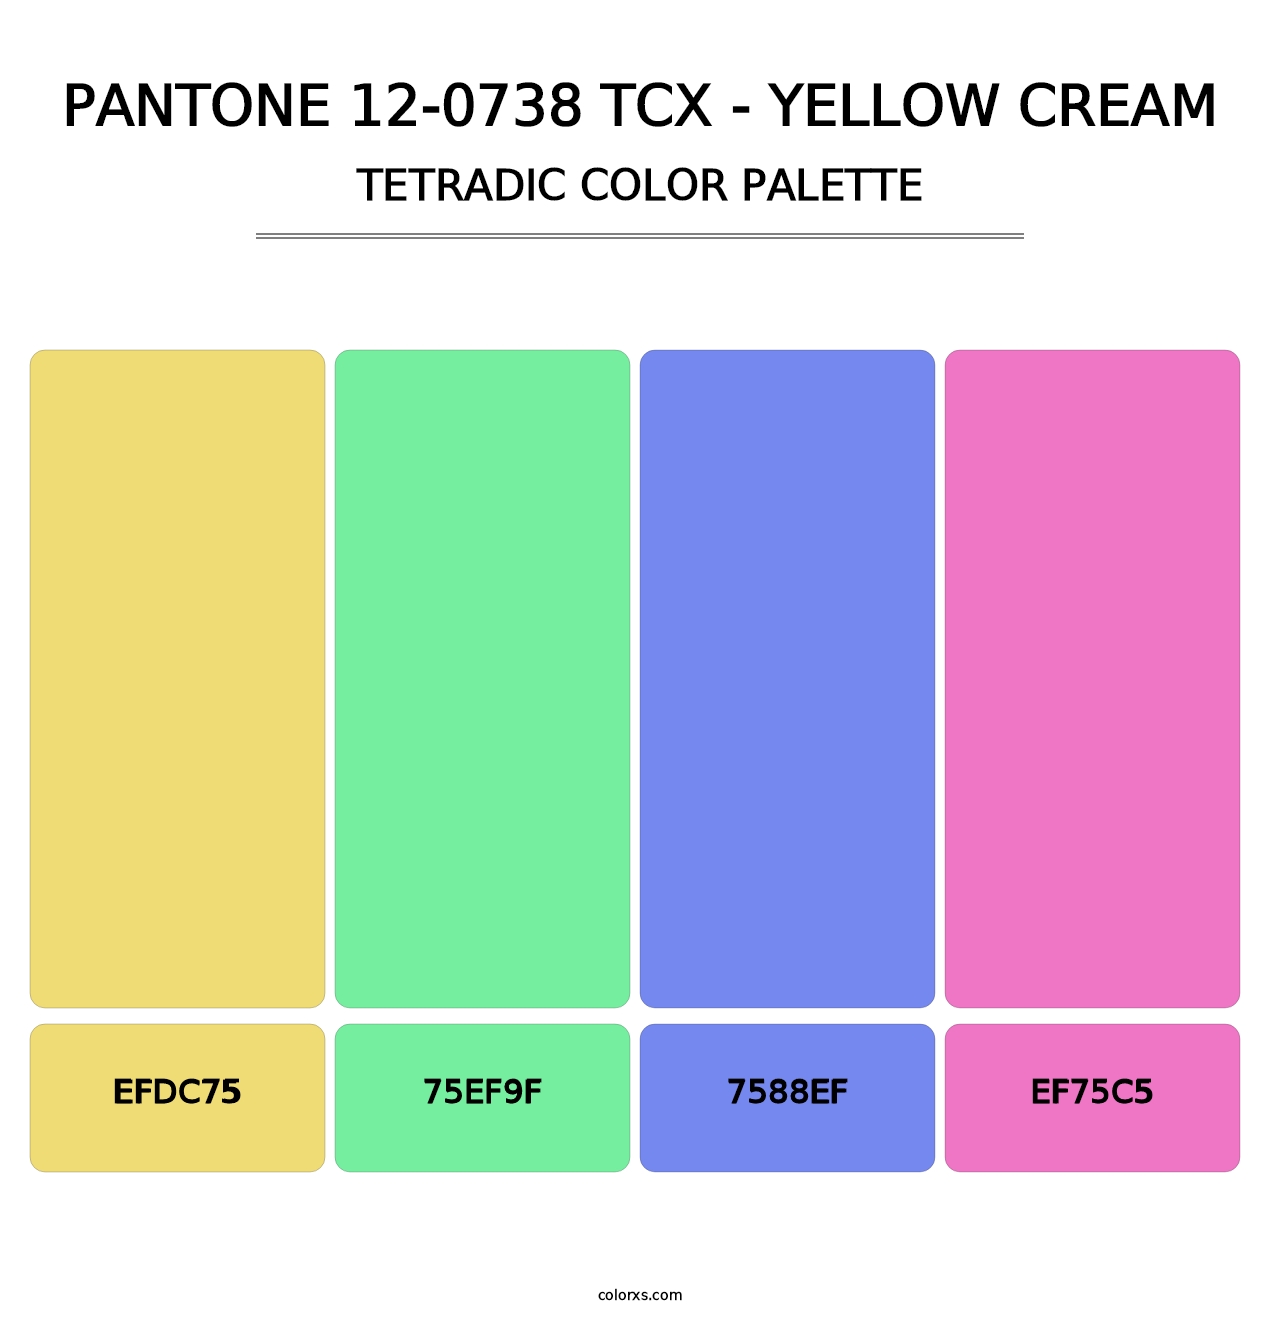 PANTONE 12-0738 TCX - Yellow Cream - Tetradic Color Palette